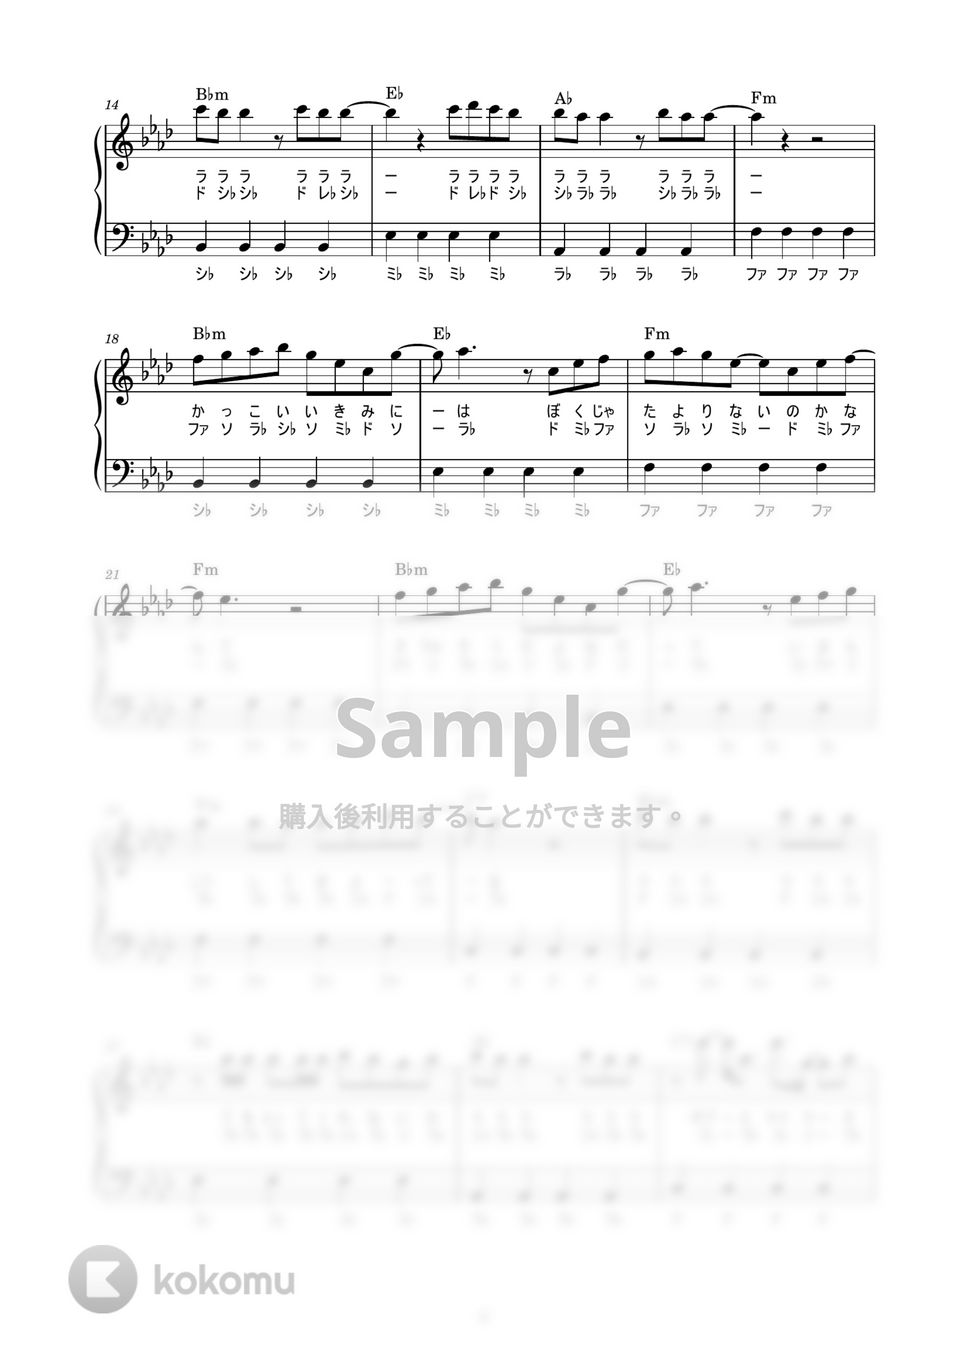 緑黄色社会 - MELA! (かんたん / 歌詞付き / ドレミ付き / 初心者) by piano.tokyo